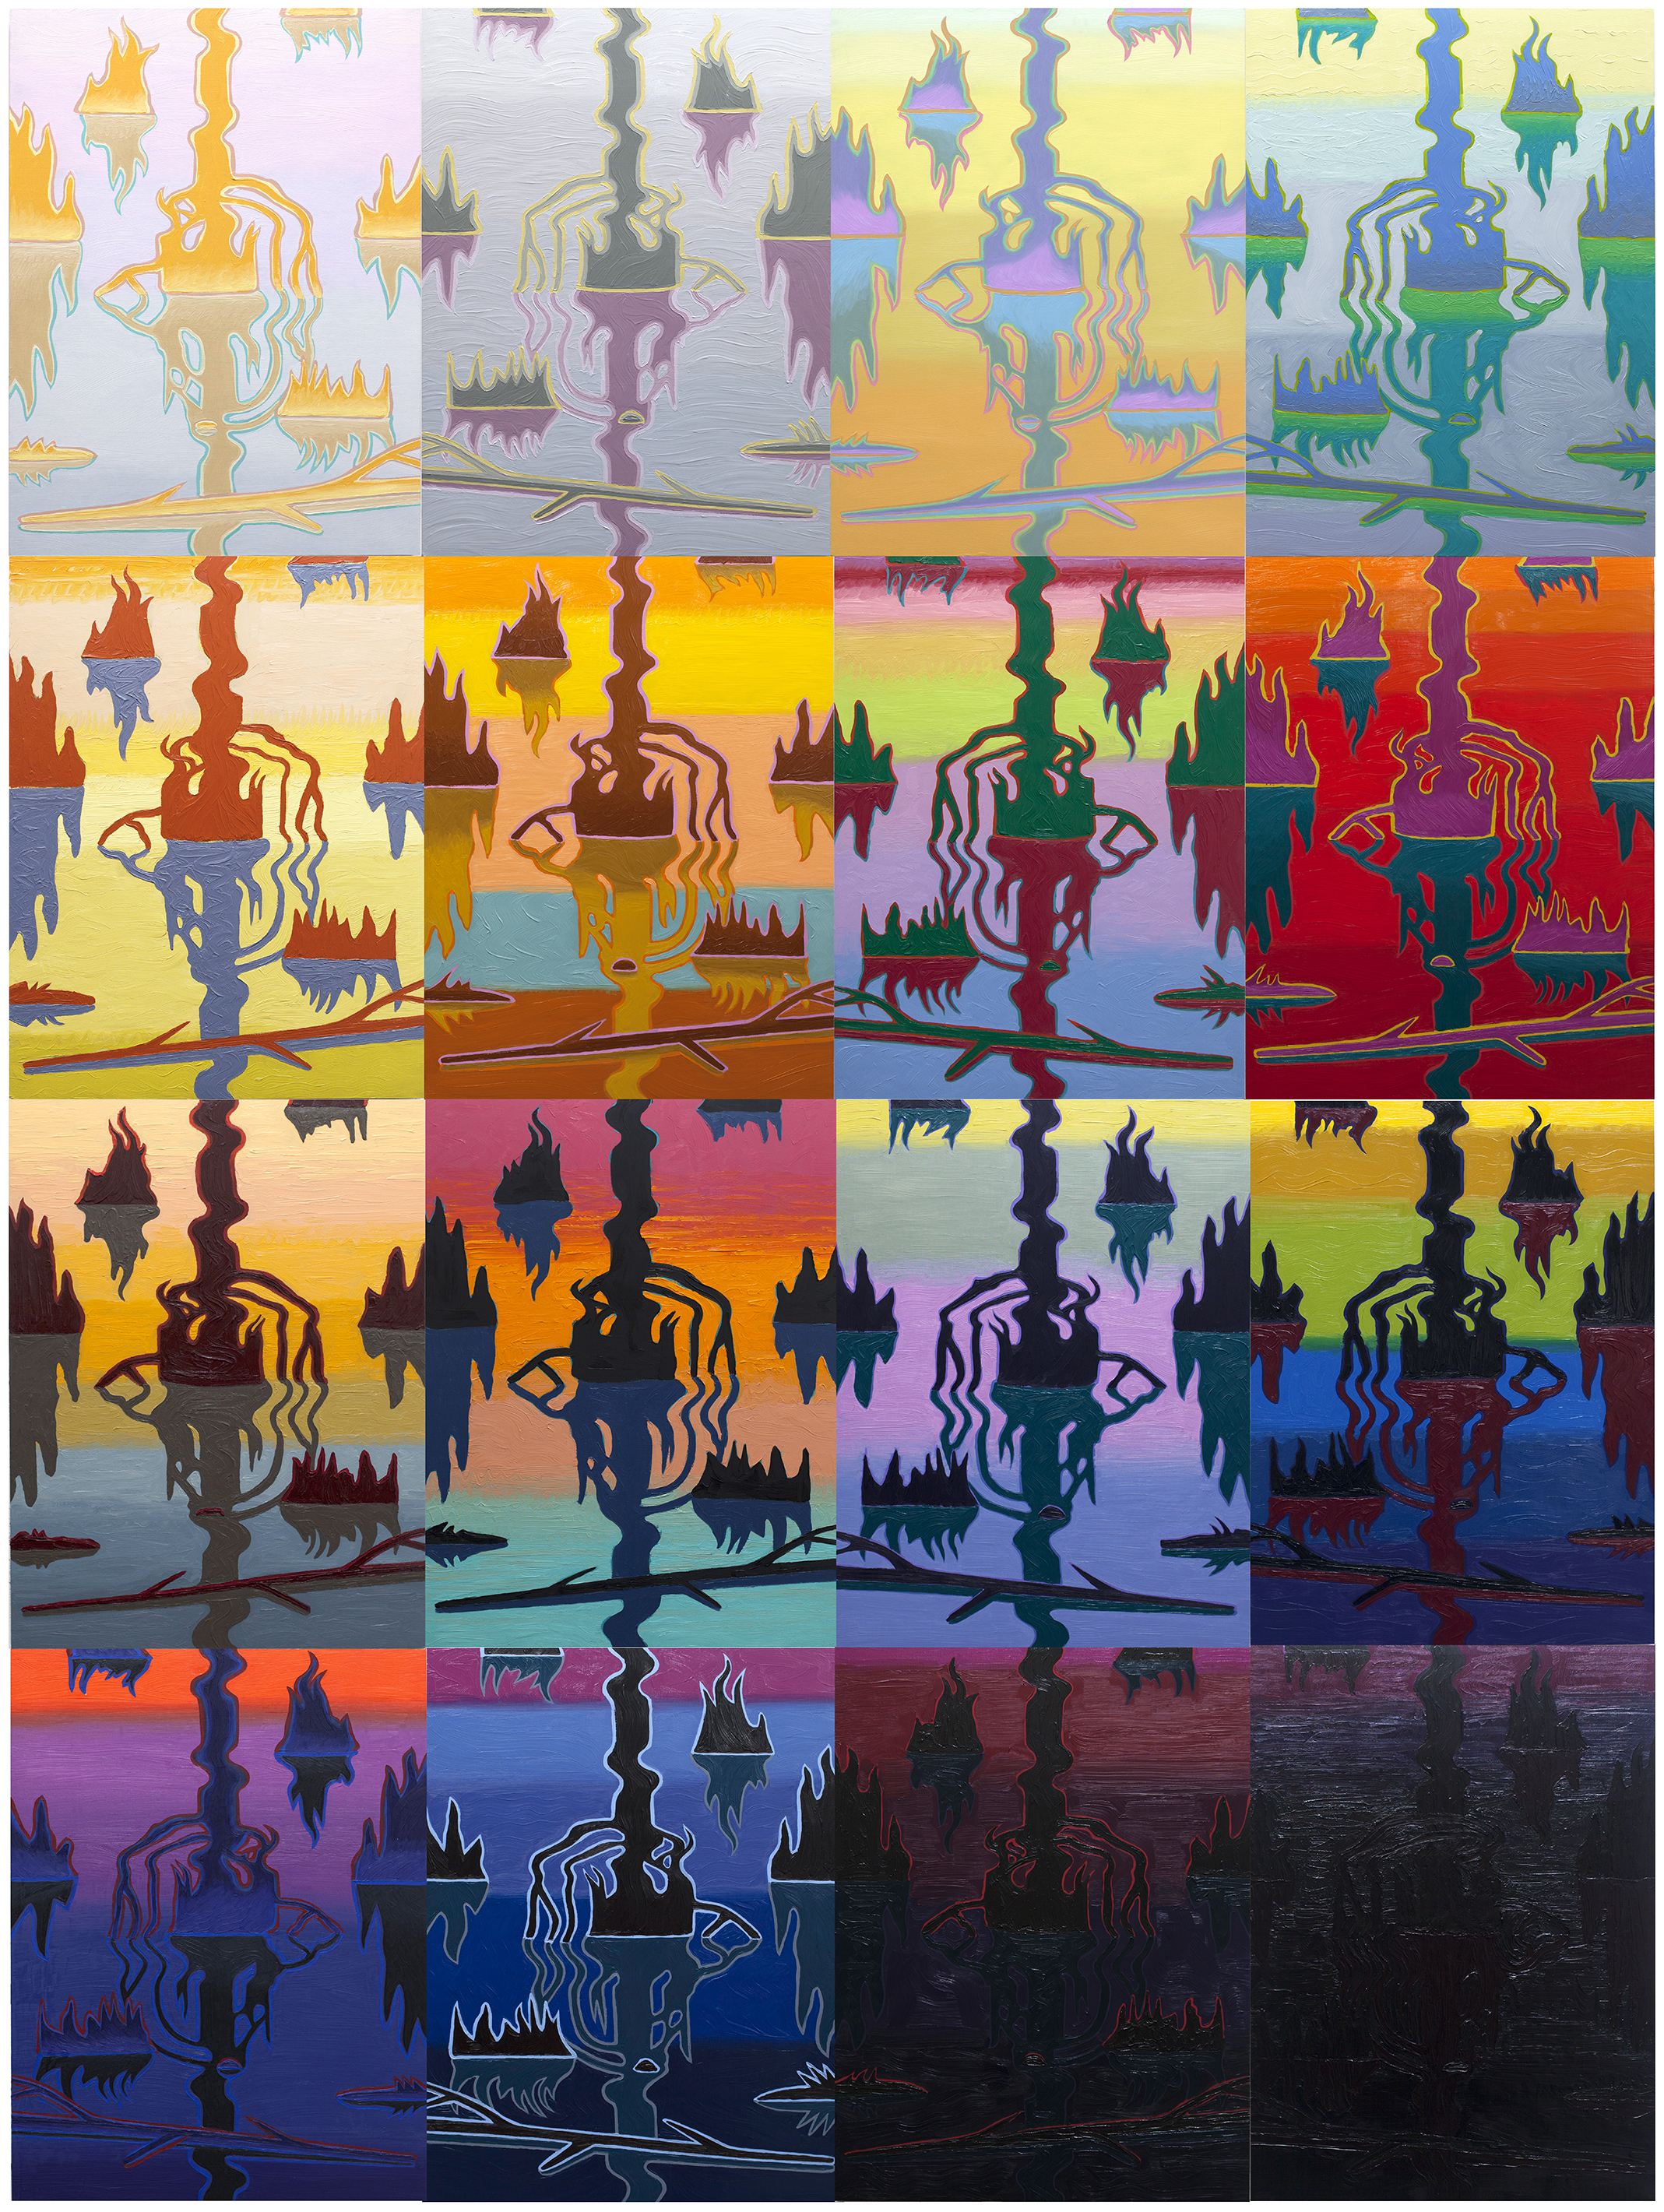   Swamp Shimmer, 16 panel arrangement   2015-18  oil on panel  96" x 72" 